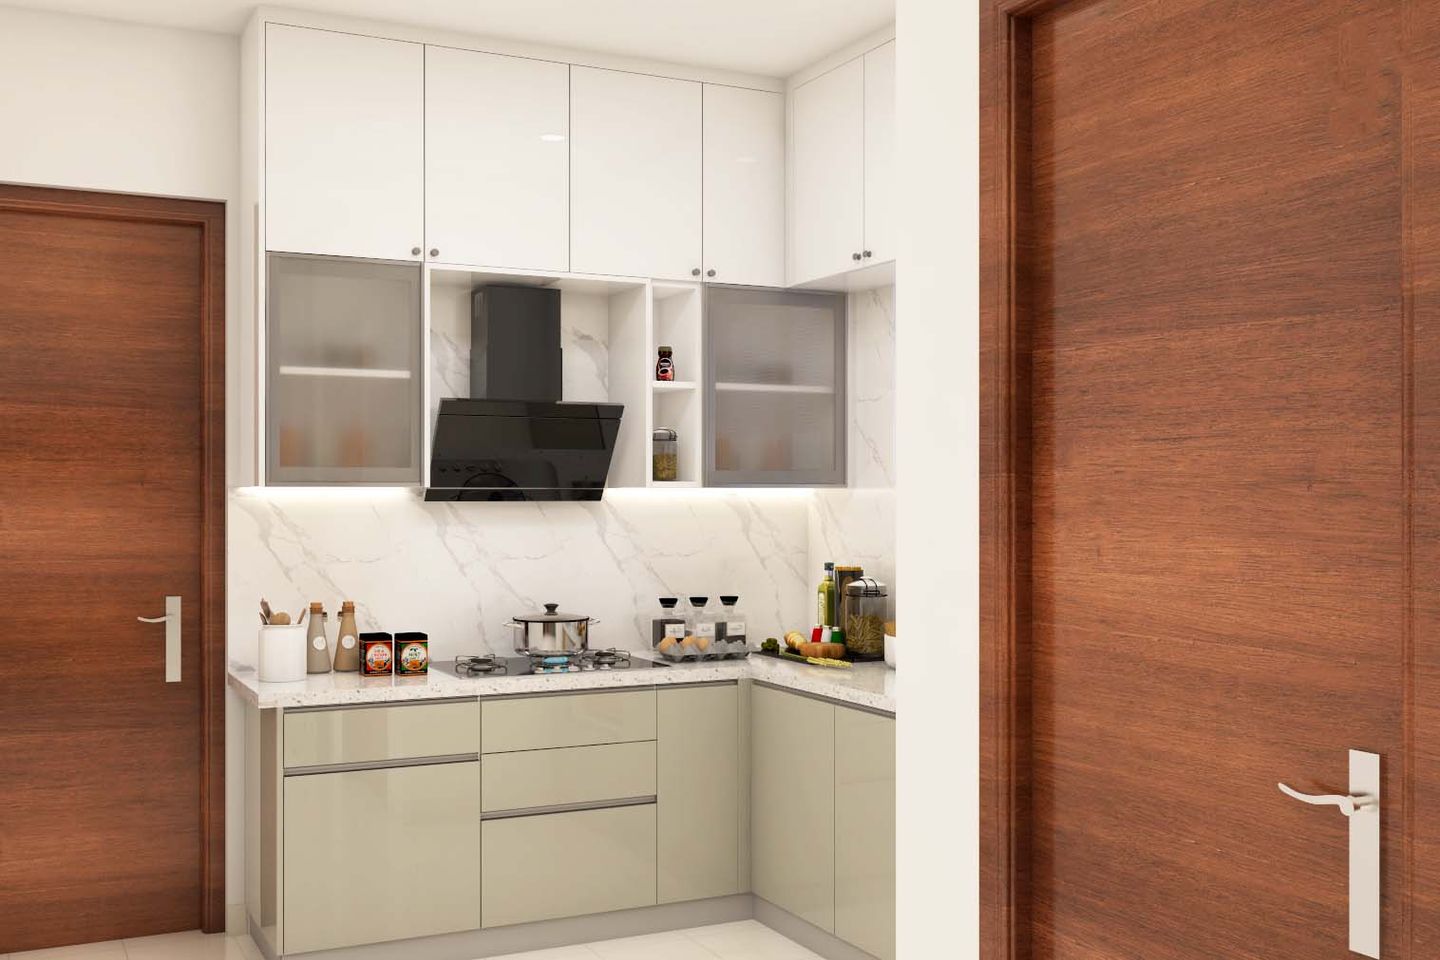 White-Themed Kitchen Interior Design - Livspace